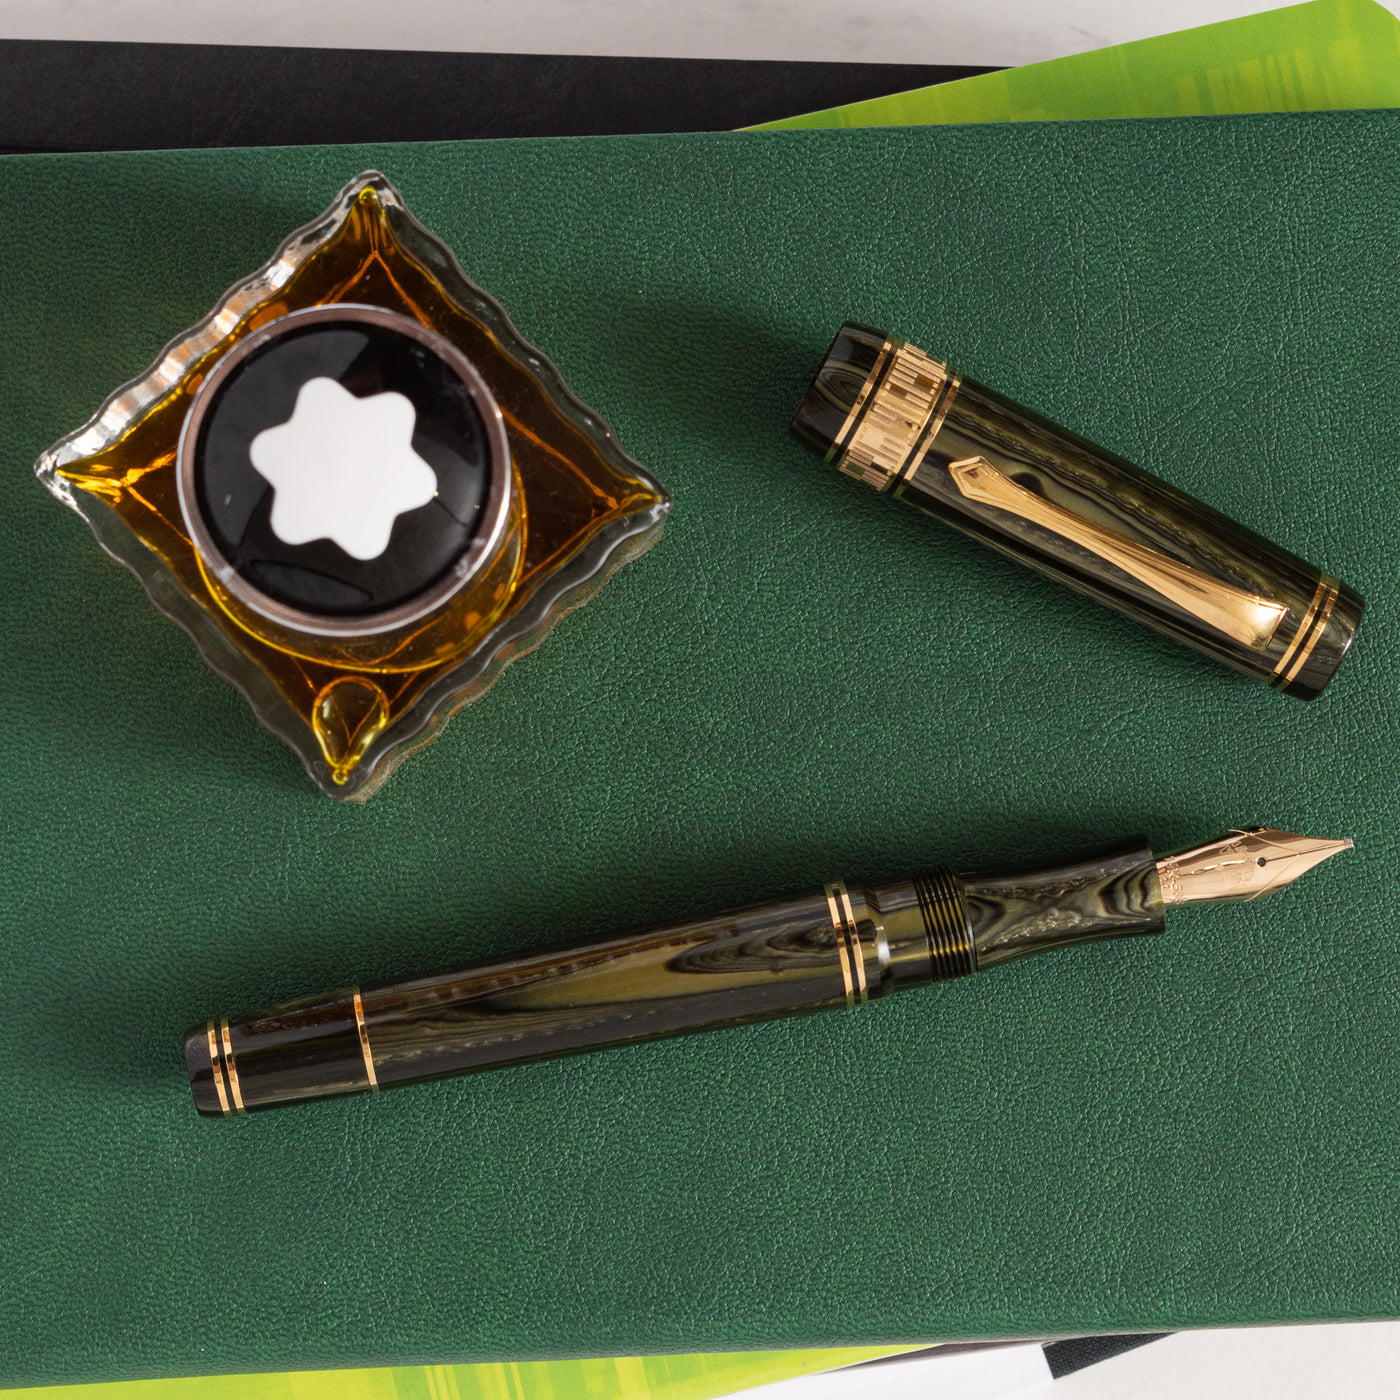 Nettuno Superba Emerald Celluloid Fountain Pen limited edition